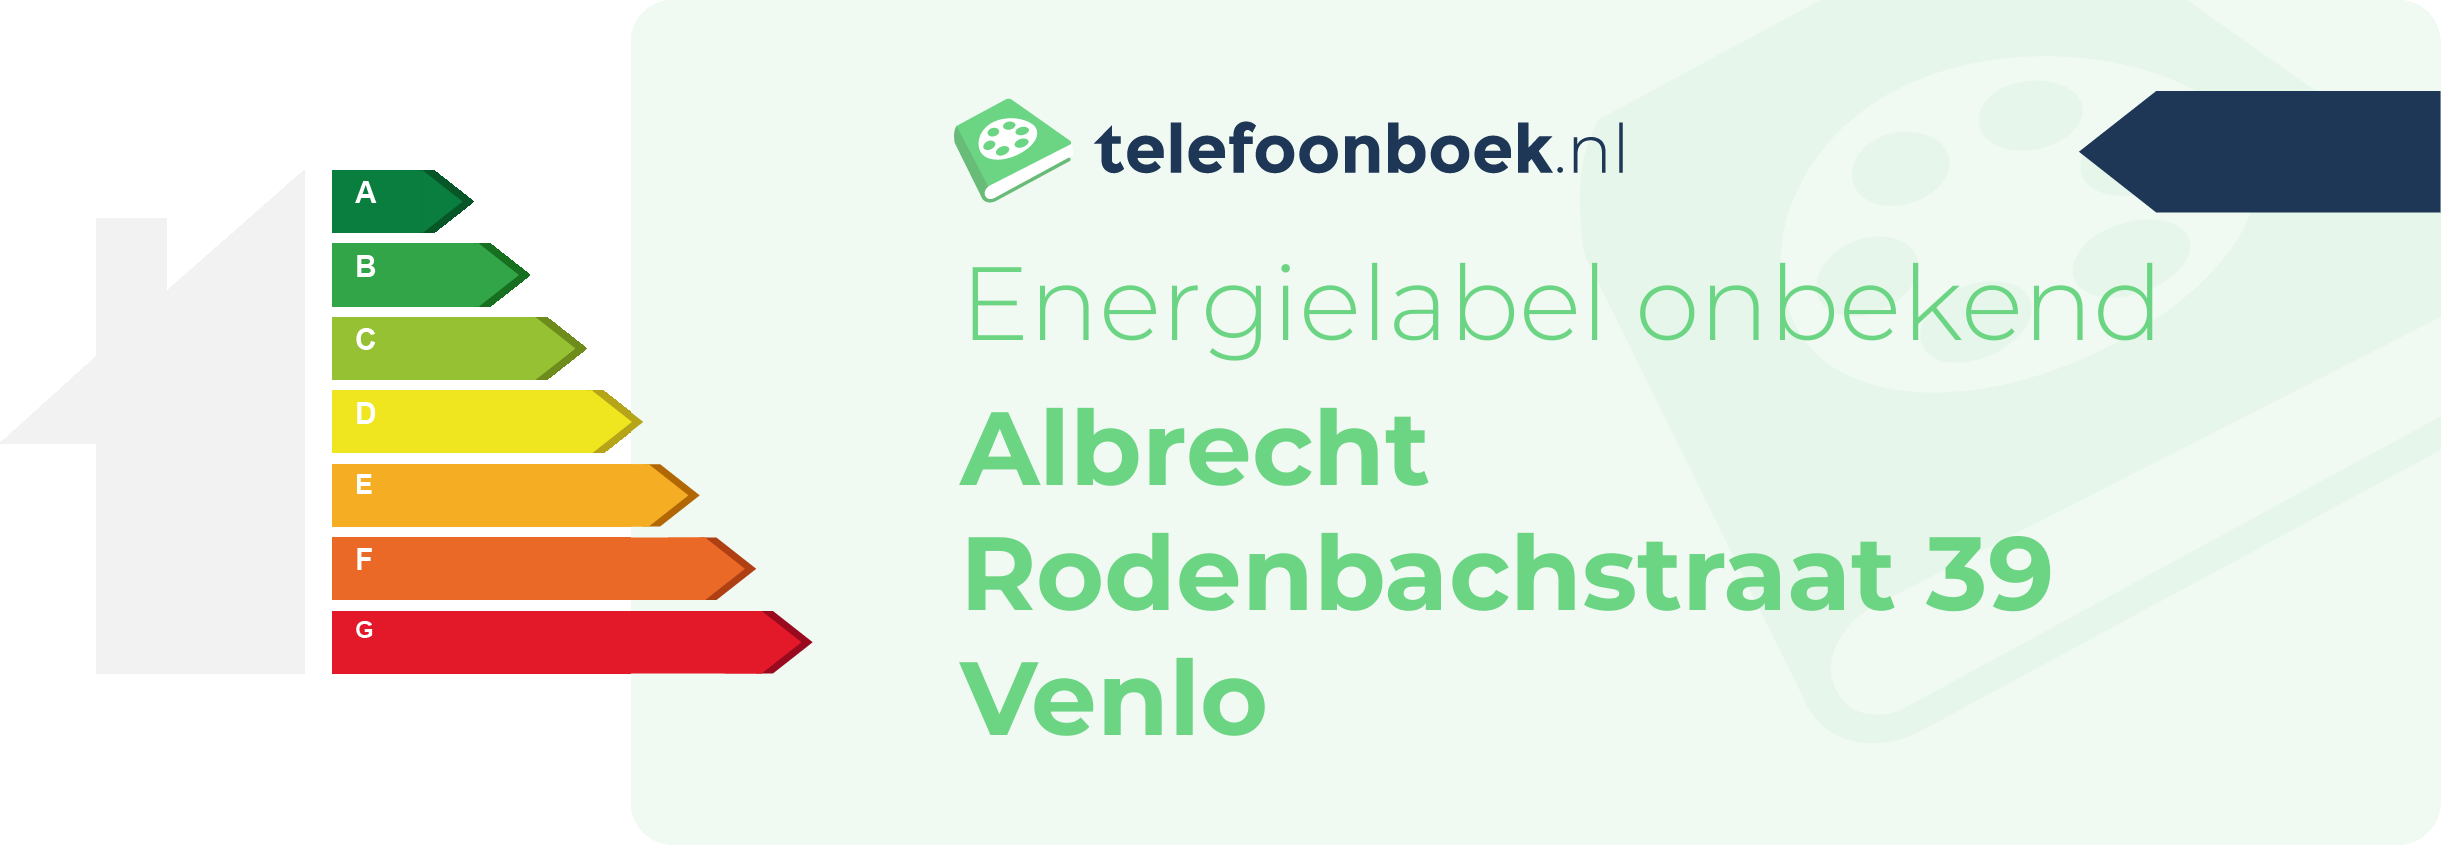 Energielabel Albrecht Rodenbachstraat 39 Venlo